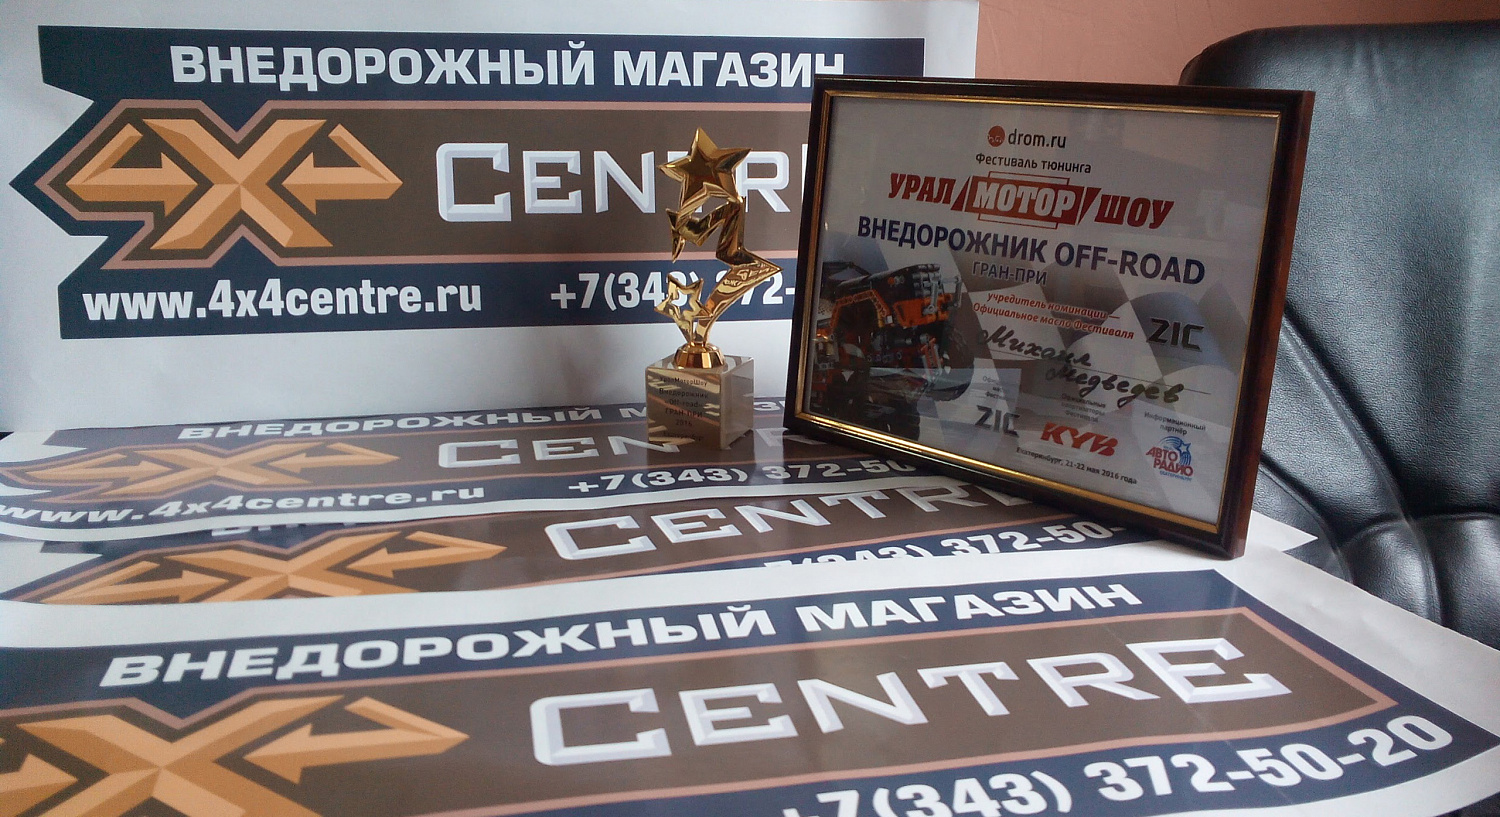 1 место в категории Внедорожник на УралМоторШоу 2016